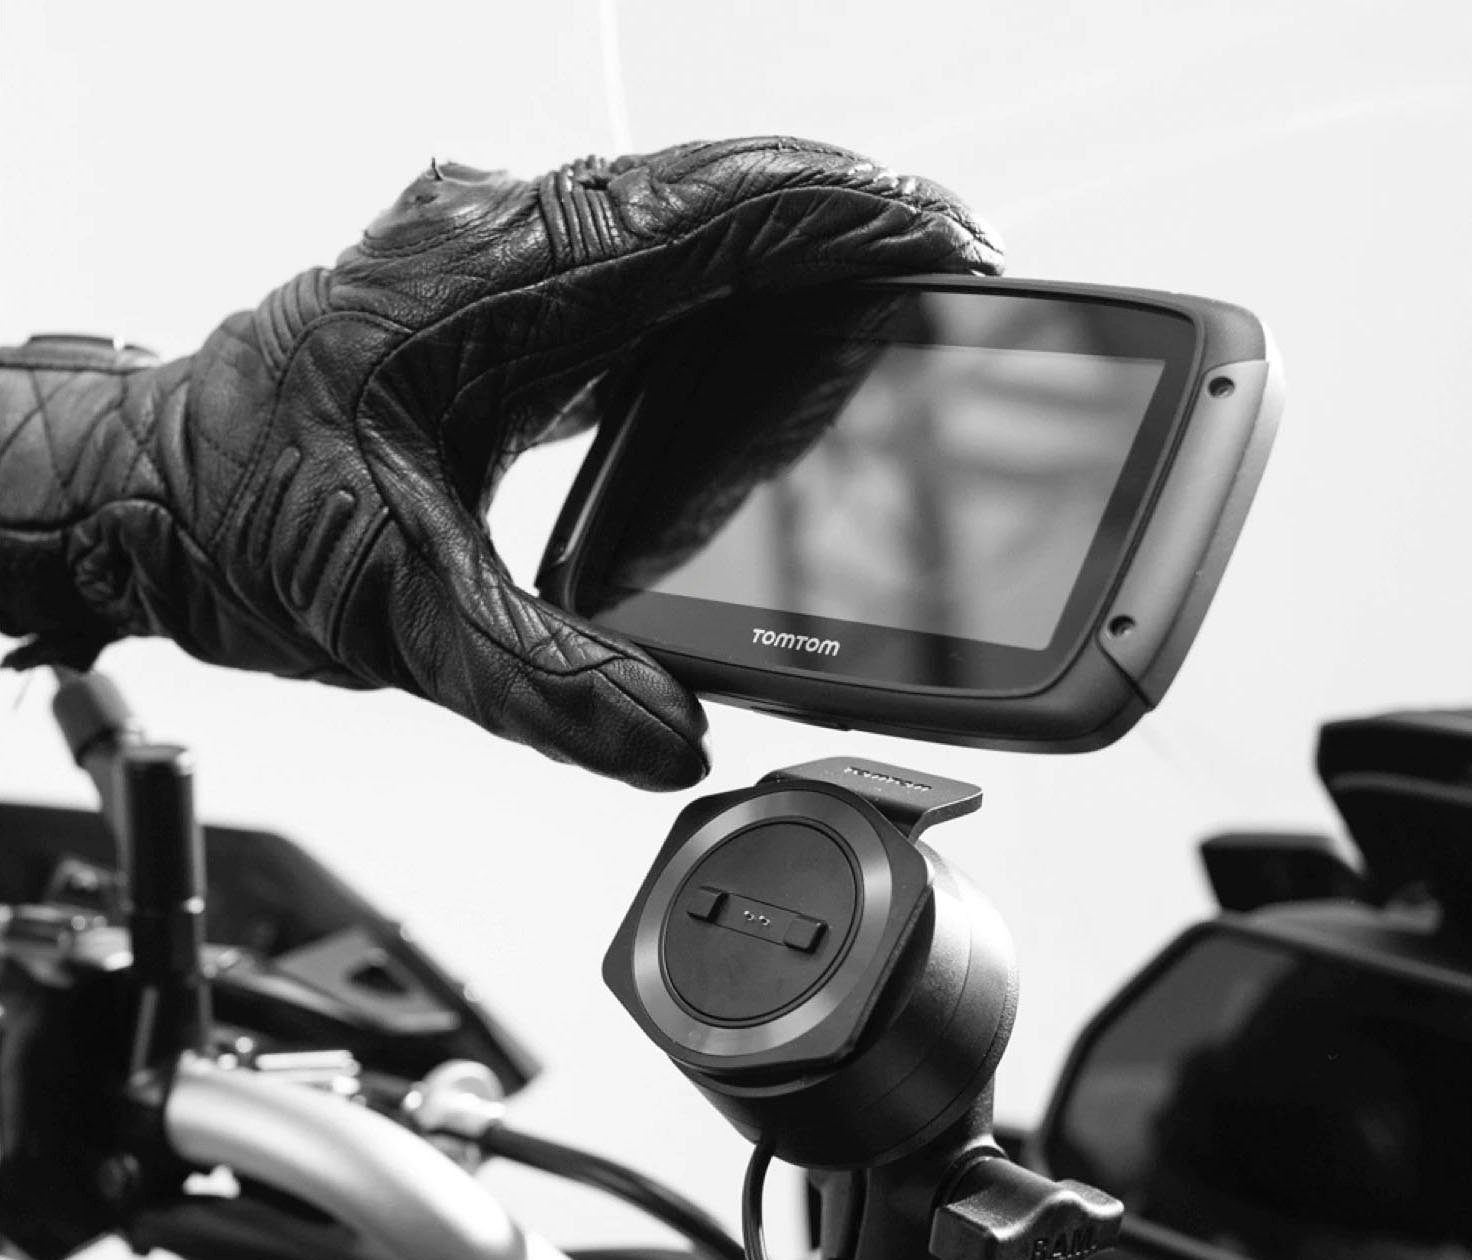 500 Rider TomTom Motorrad-Navigationsgerät